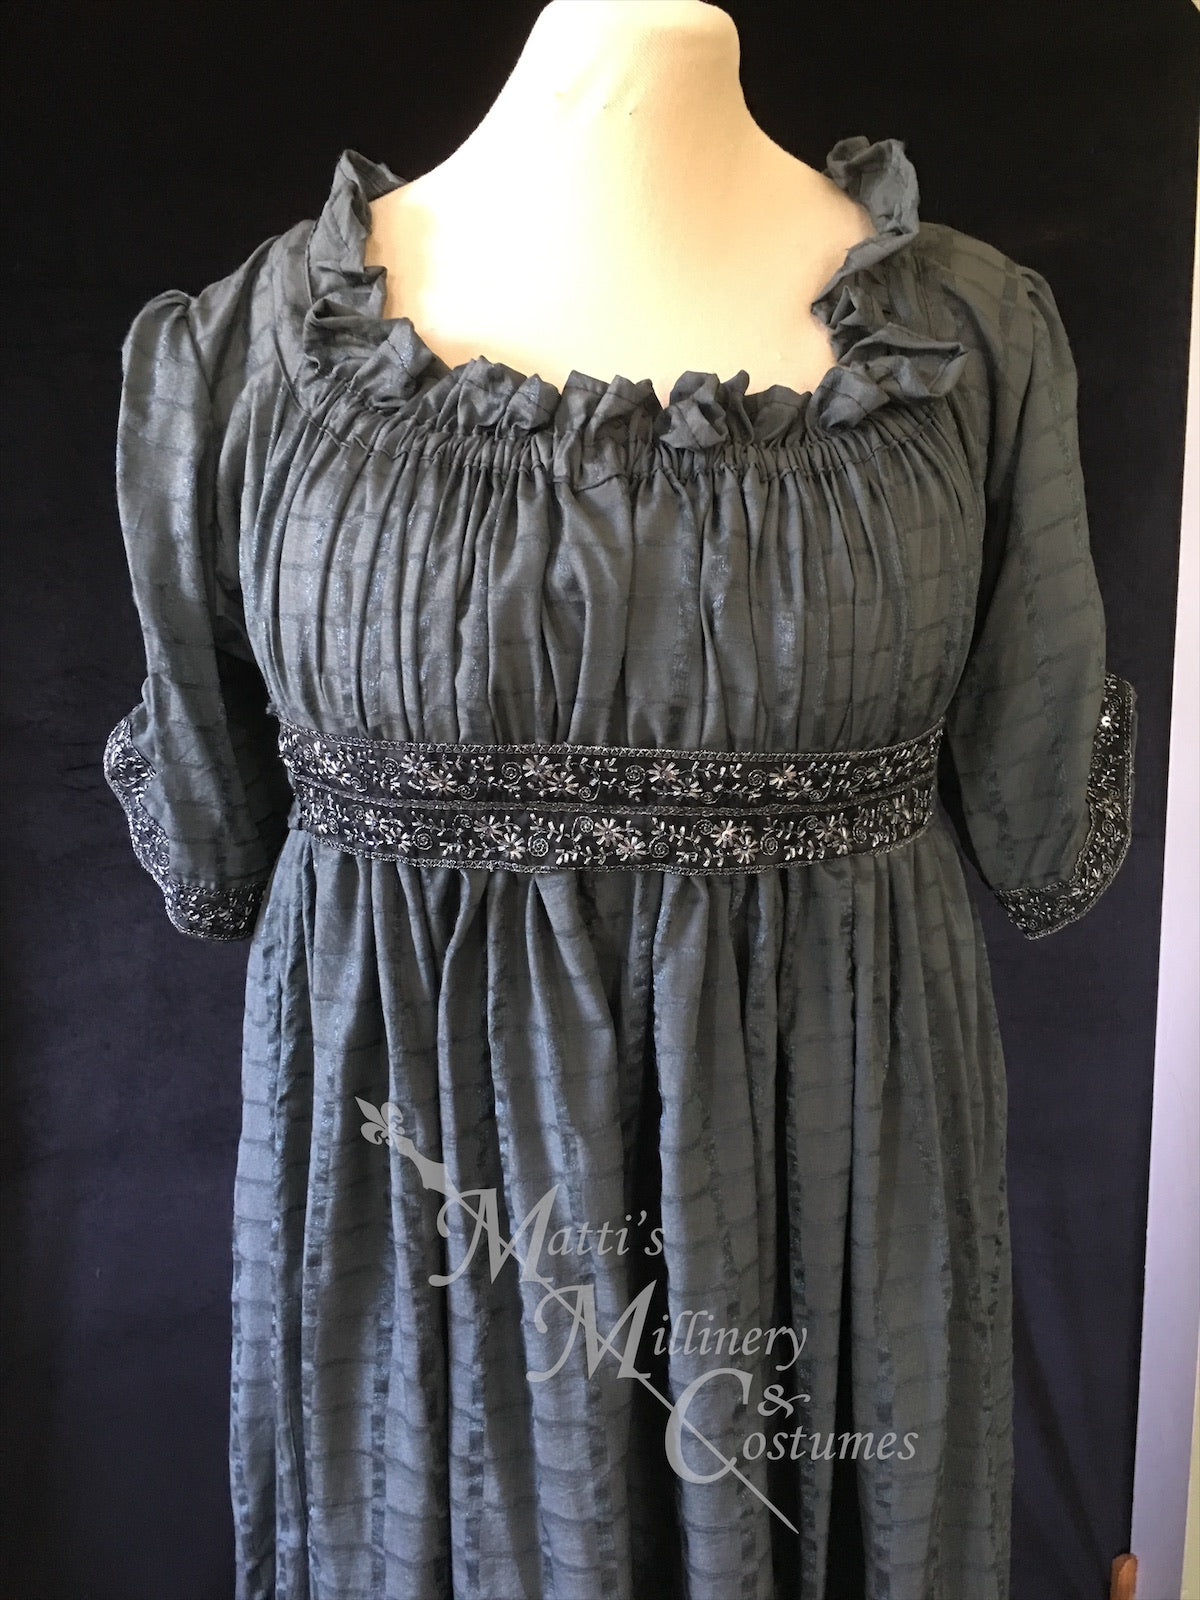 Magic Pewter 1790s Round Gown Jane Austen Regency Day Dress in cotton